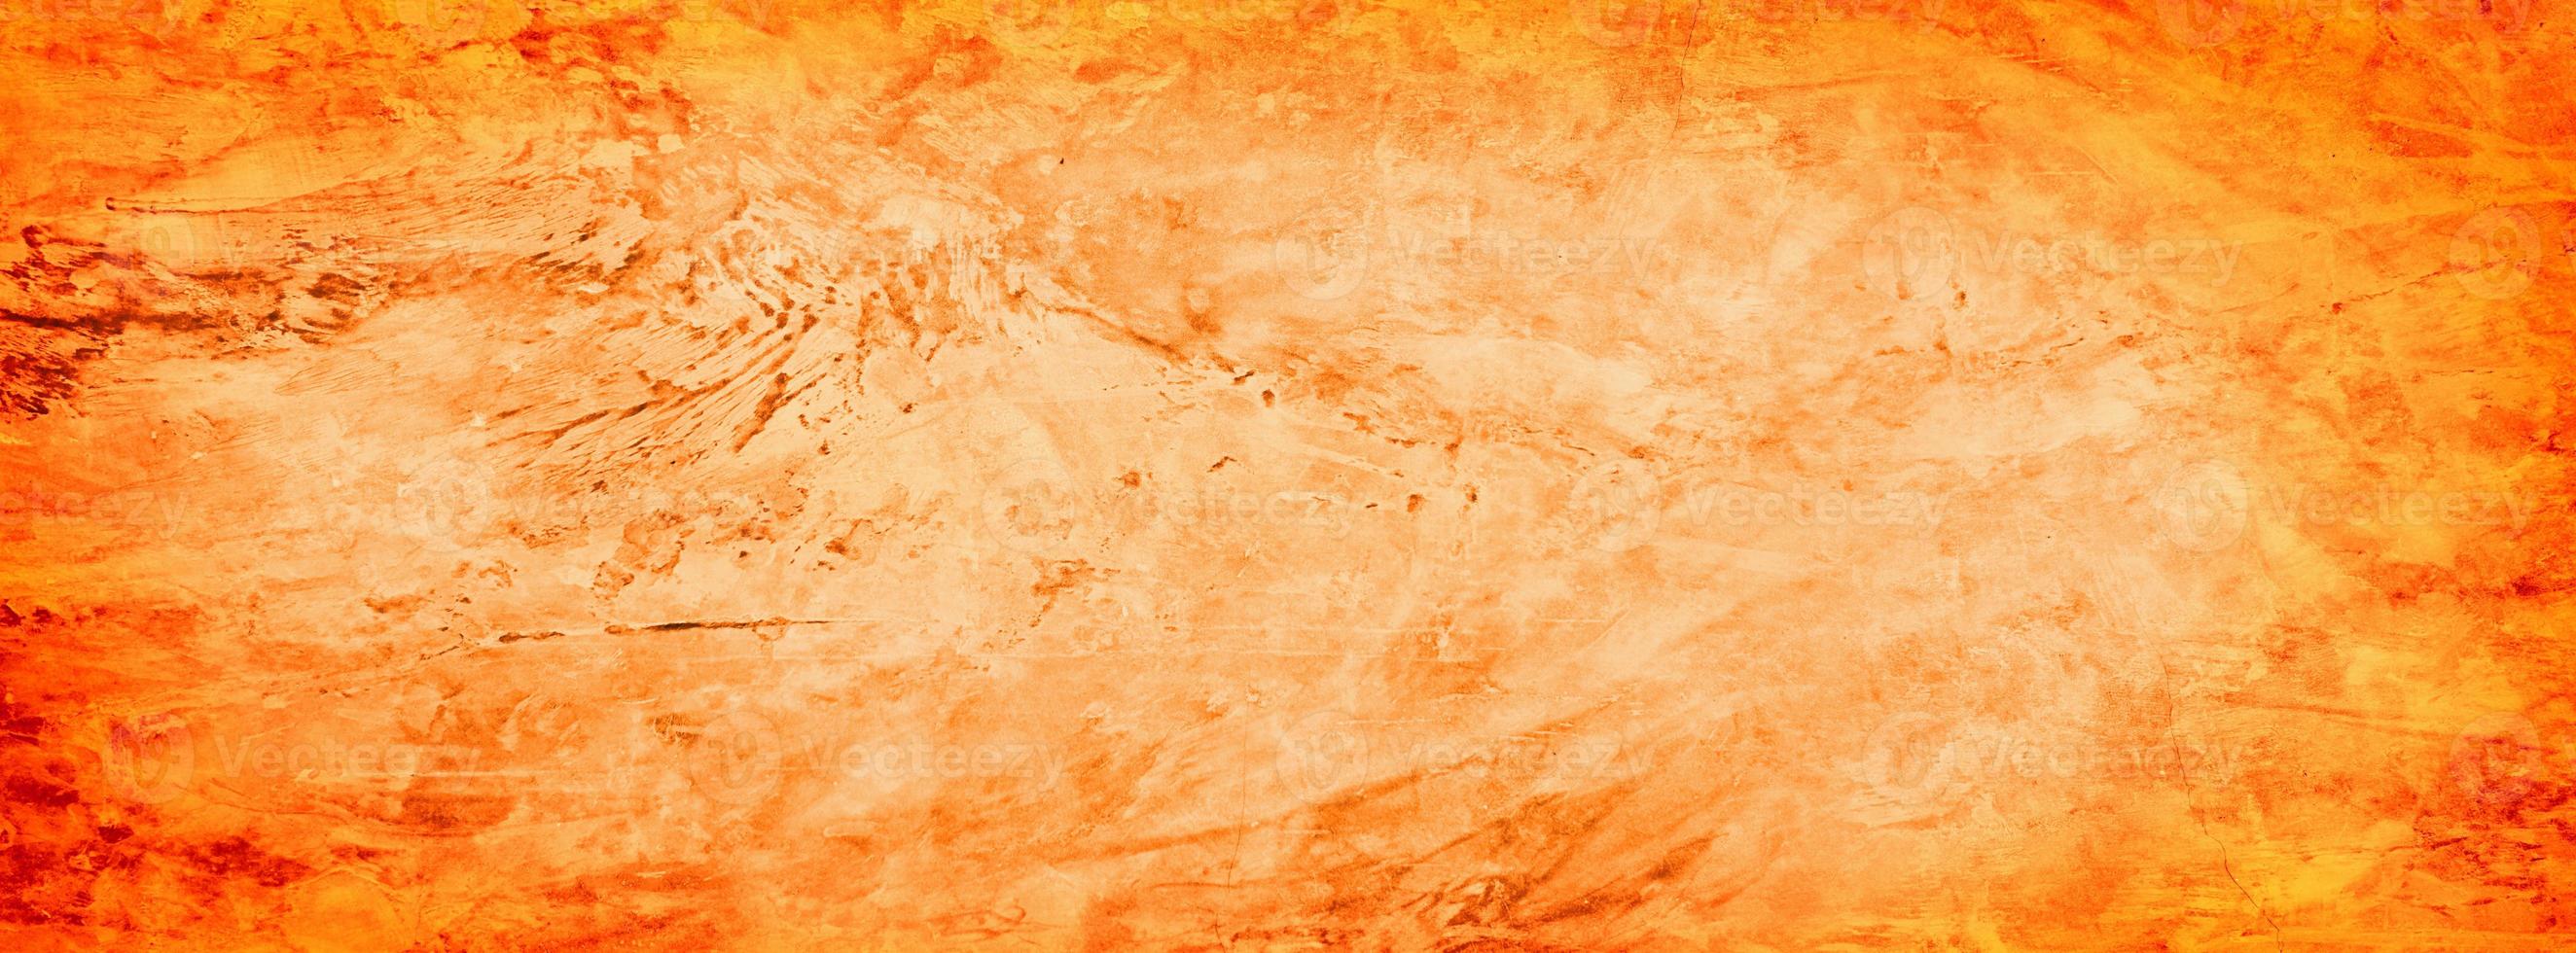 fond de mur de texture de ciment orange grunge photo